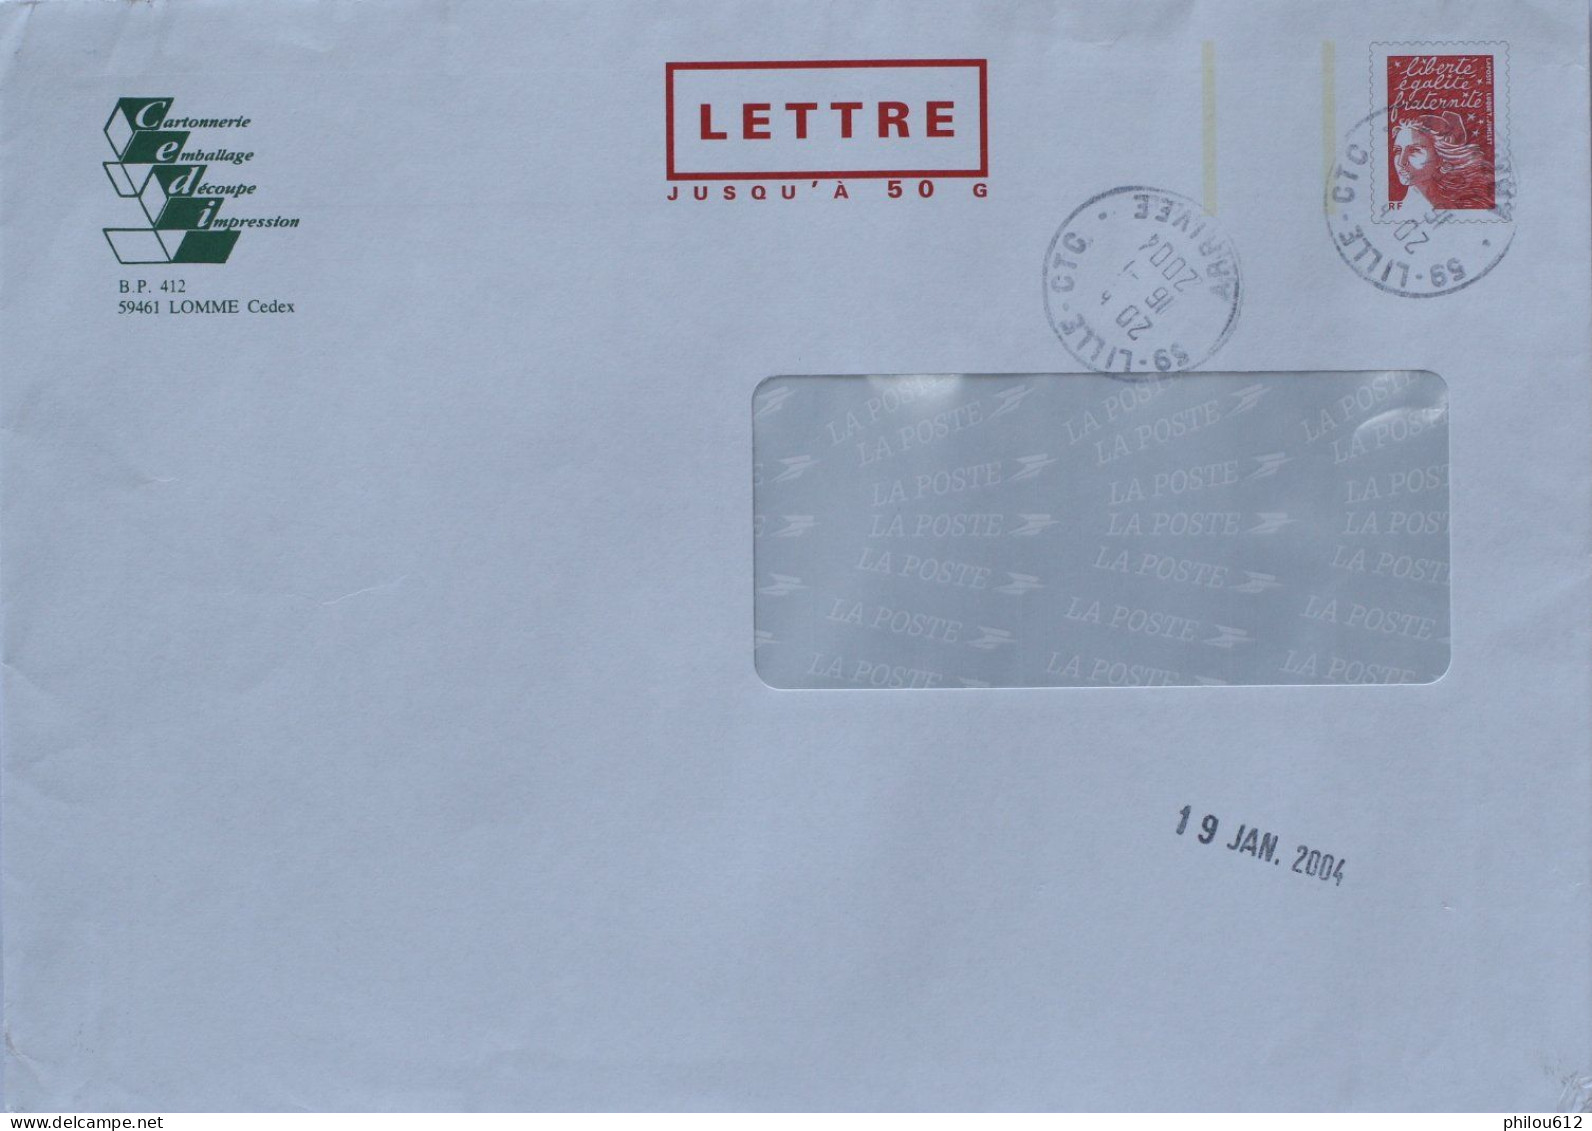 59 - Lomme -  PAP Repiquage Cartonnerie CEDI - Lettre 50G Avec Fenêtre - Obl Man Lille - 2004 - PAP: Ristampa/Luquet